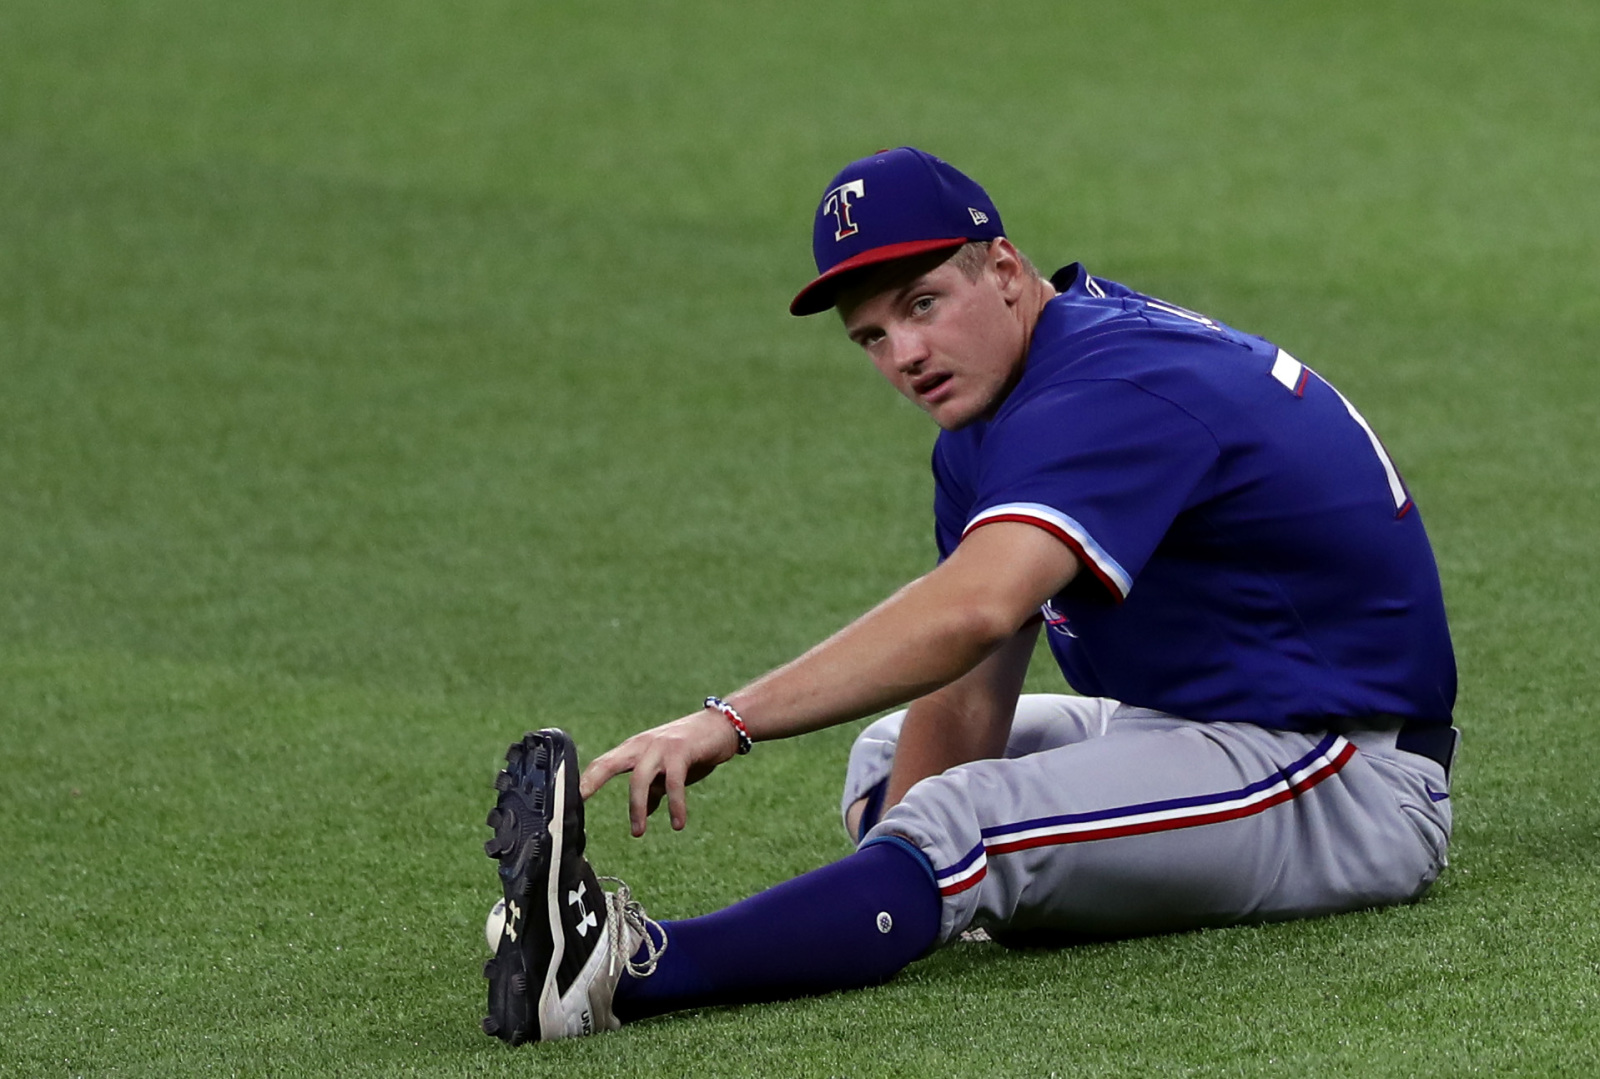 Texas Tech baseball alums: Josh Jung's big series helps Texas Rangers  advance